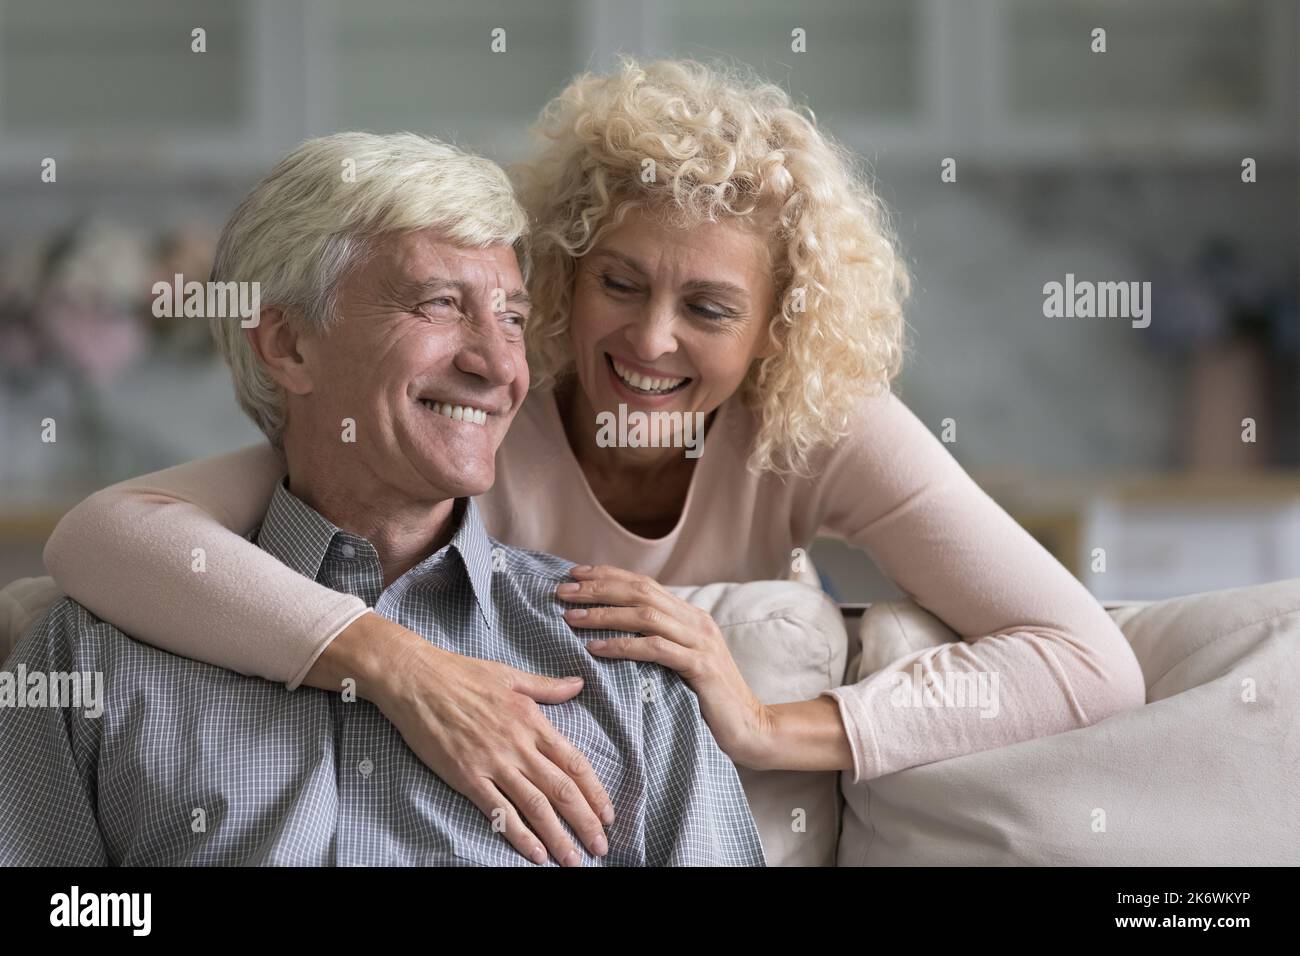 Une femme souriante plus âgée enrasse son mari joyeux et bien-aimé Banque D'Images